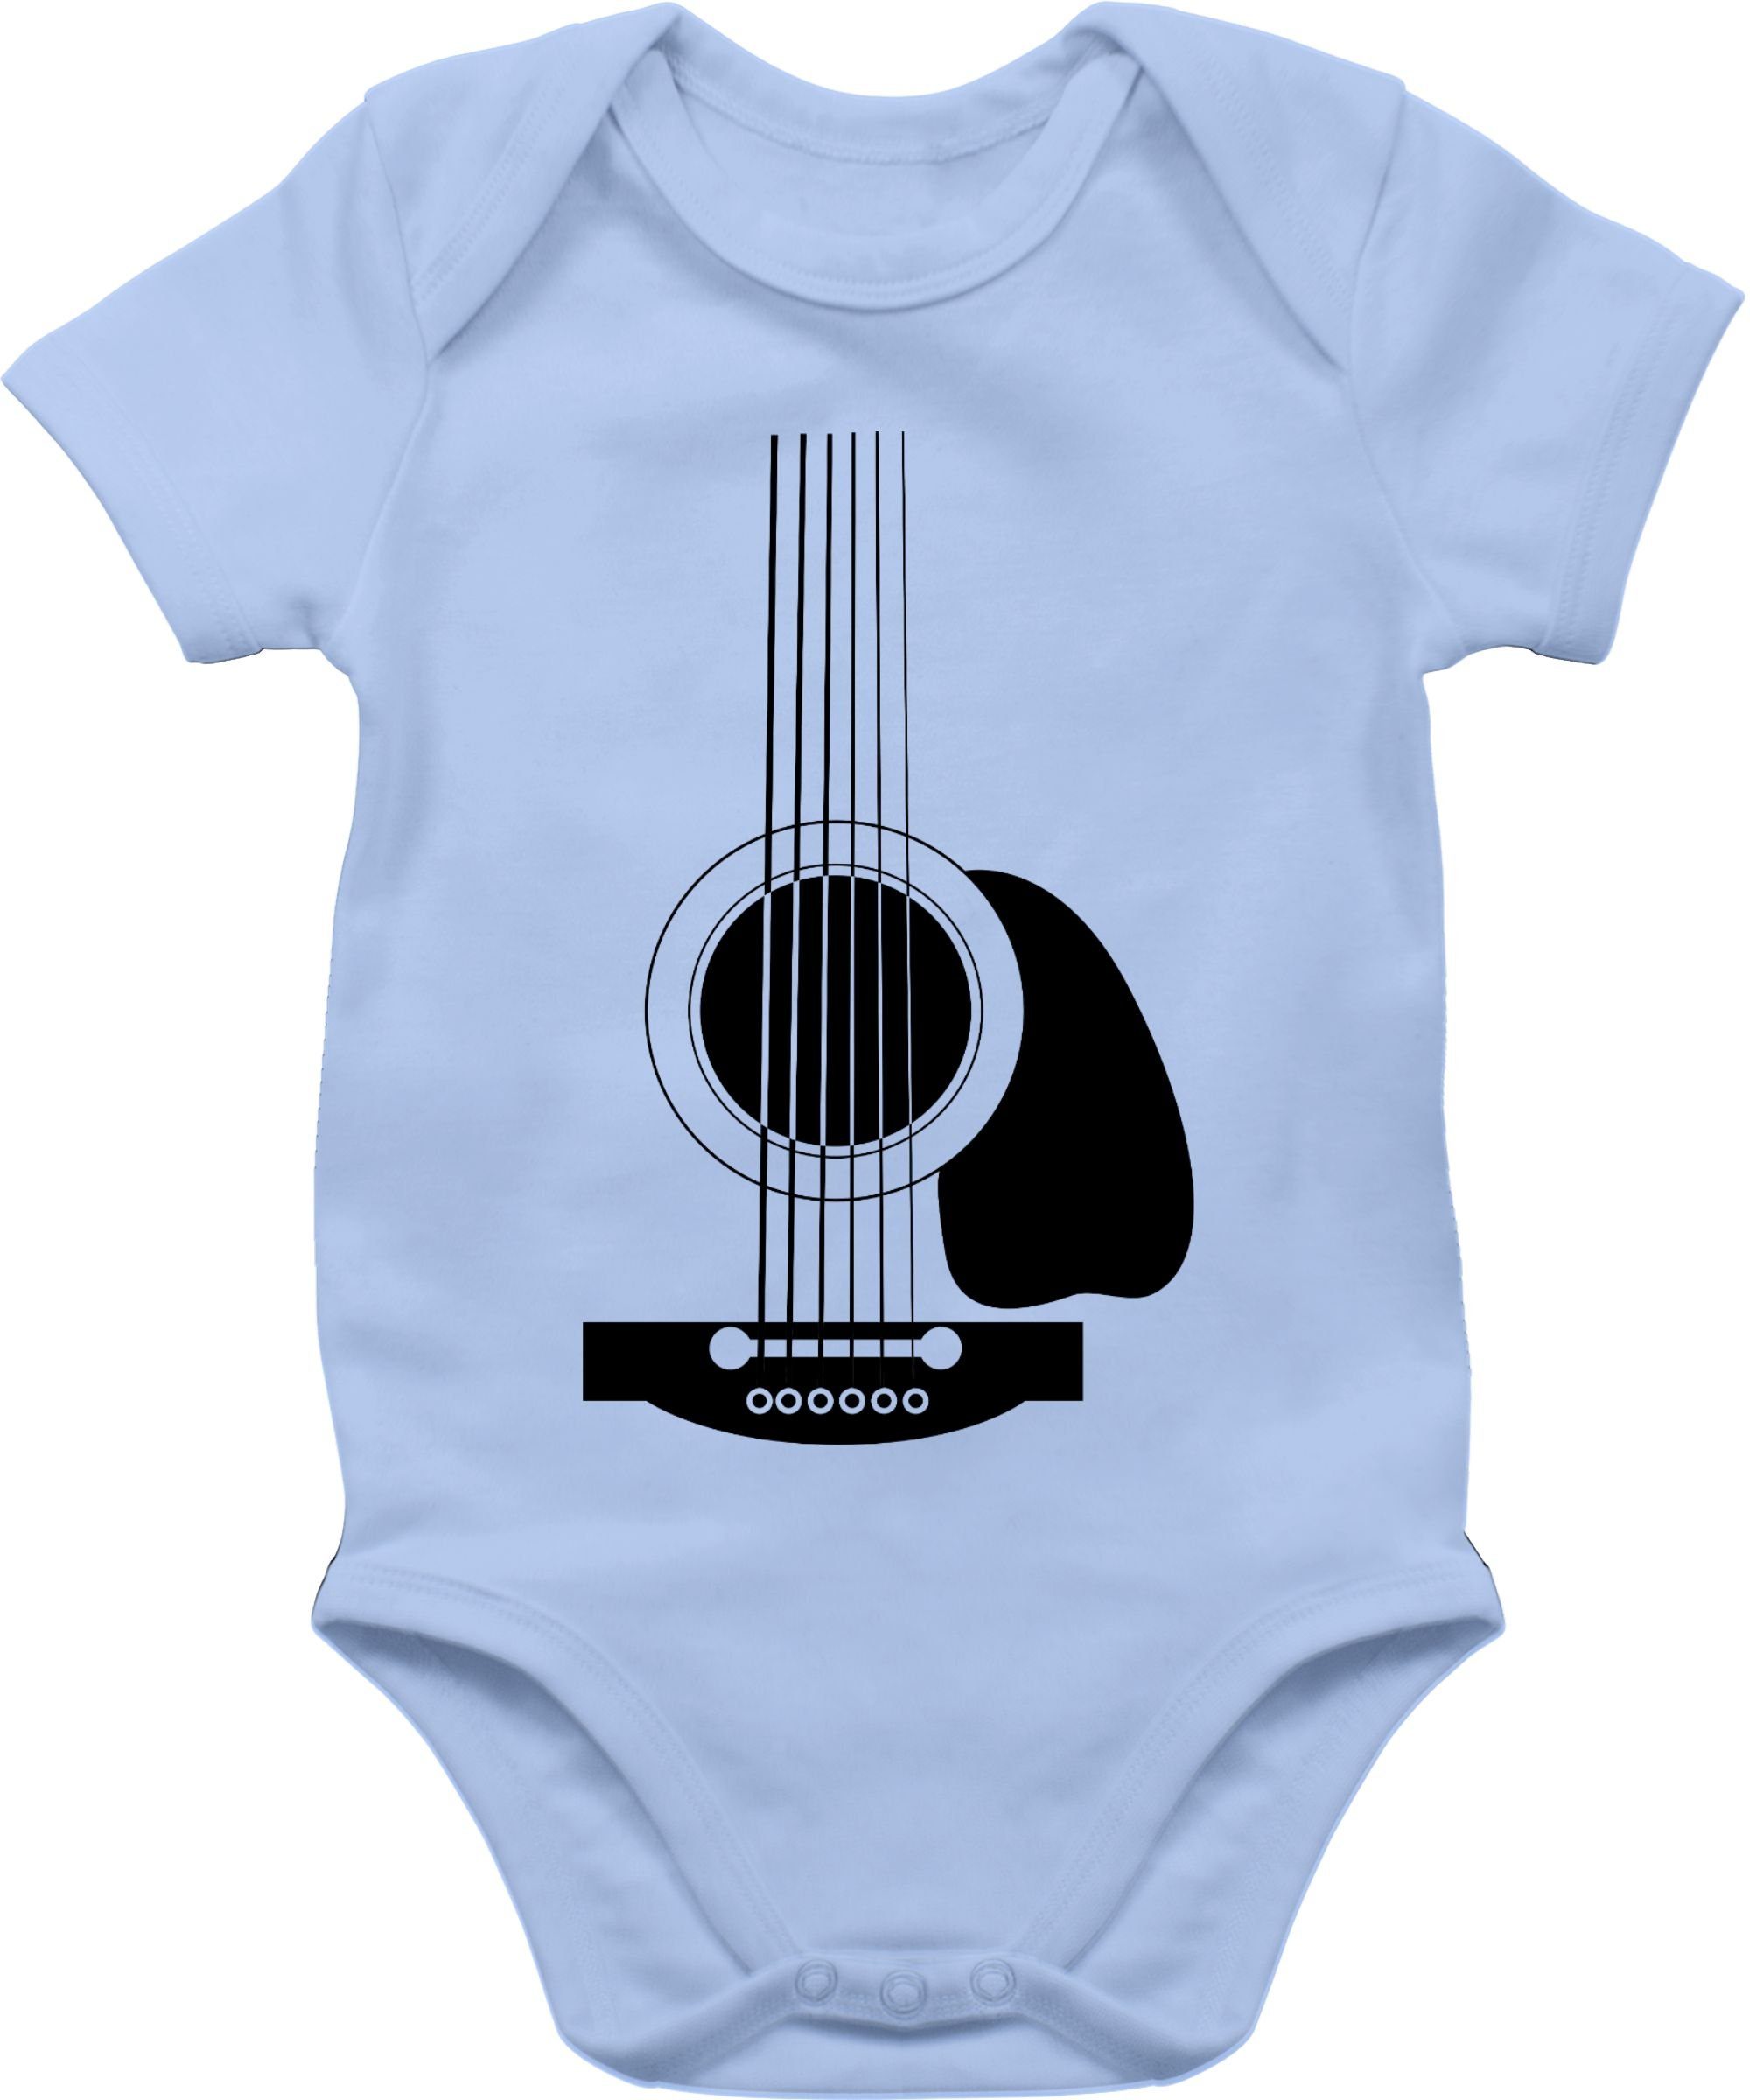 Mädchen Body 2 & Shirtbody Shirtracer Gitarren Baby Strampler Babyblau Junge